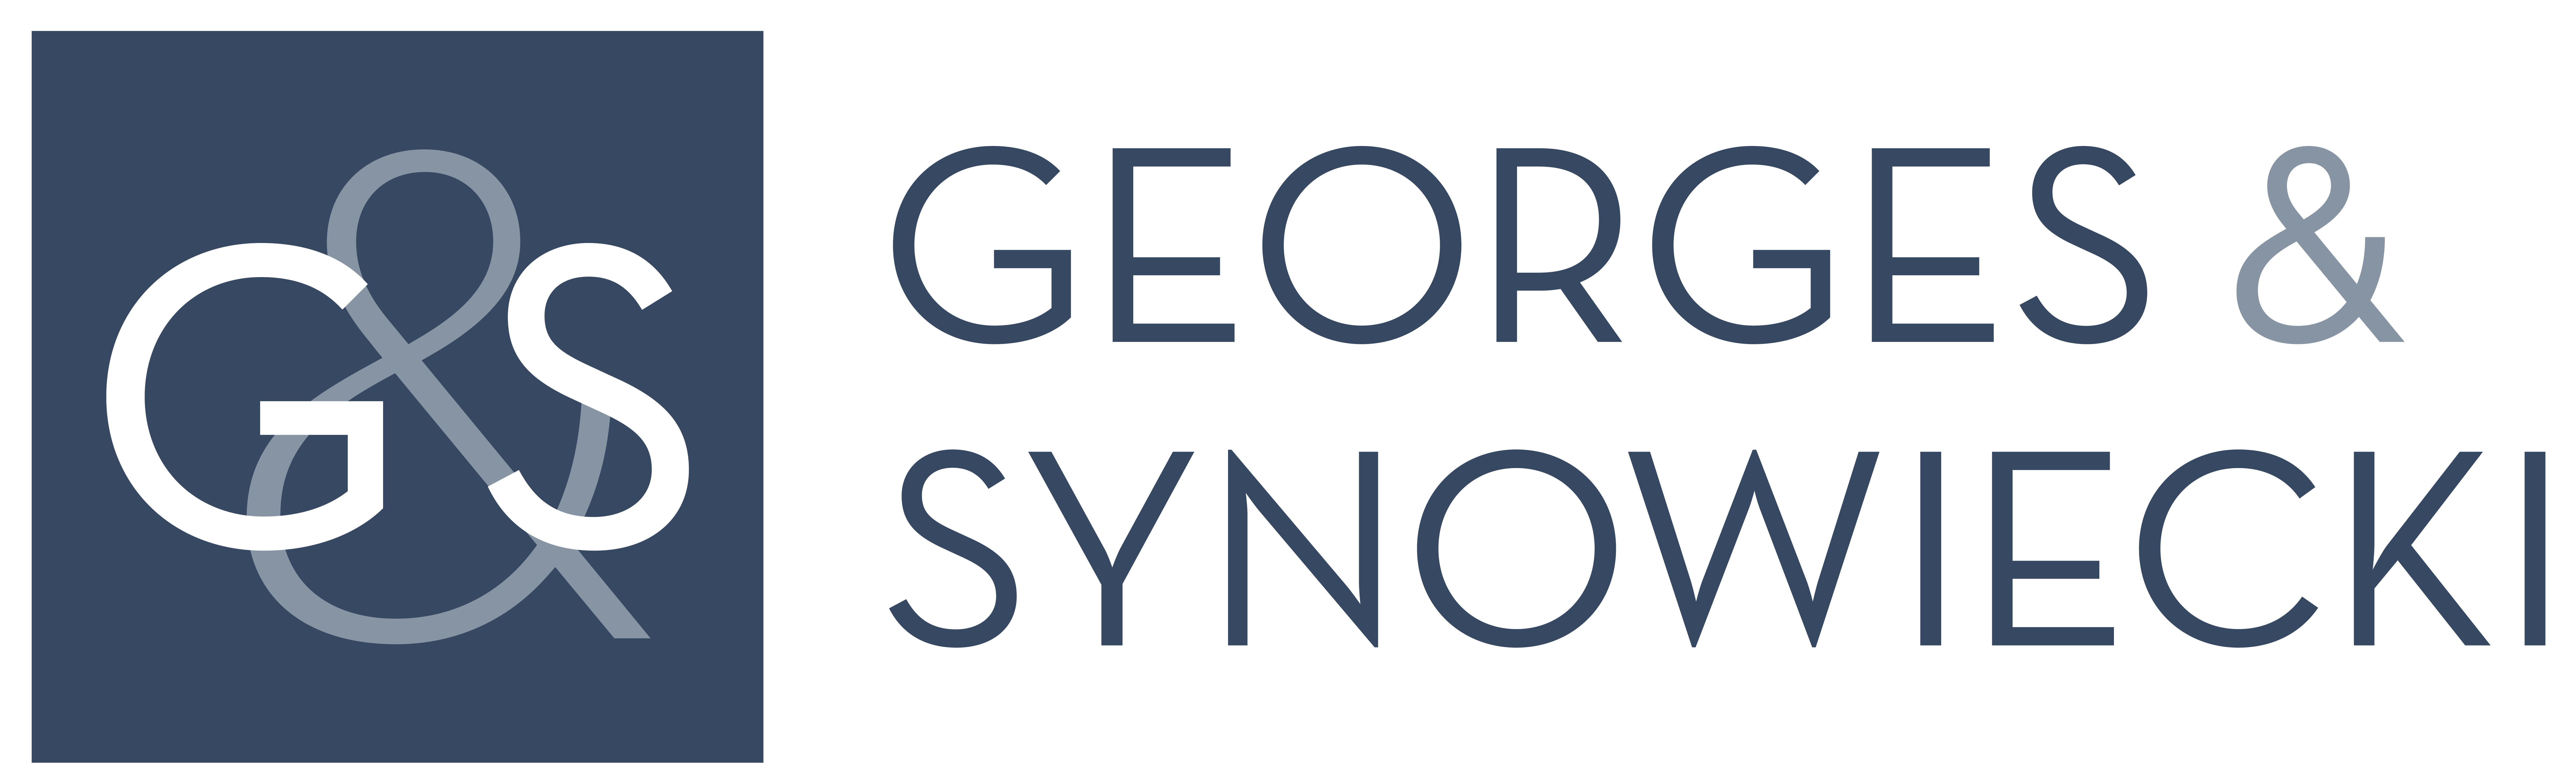 Georges & Synowiecki